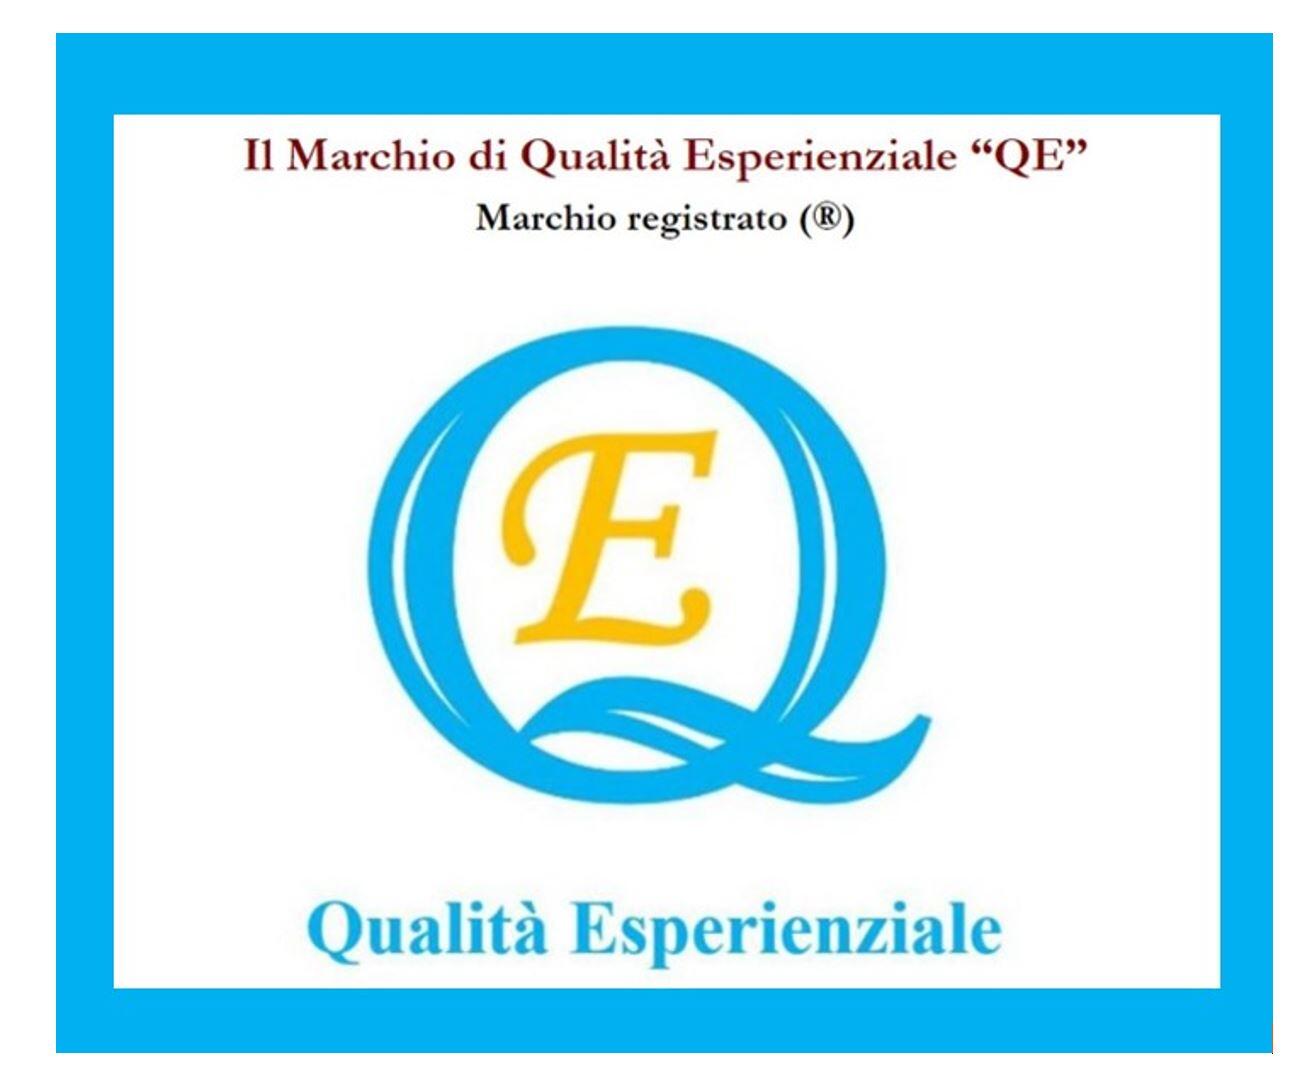 Il Marchio di Qualità del Turismo e del Marketing Esperienziale "QE" ®